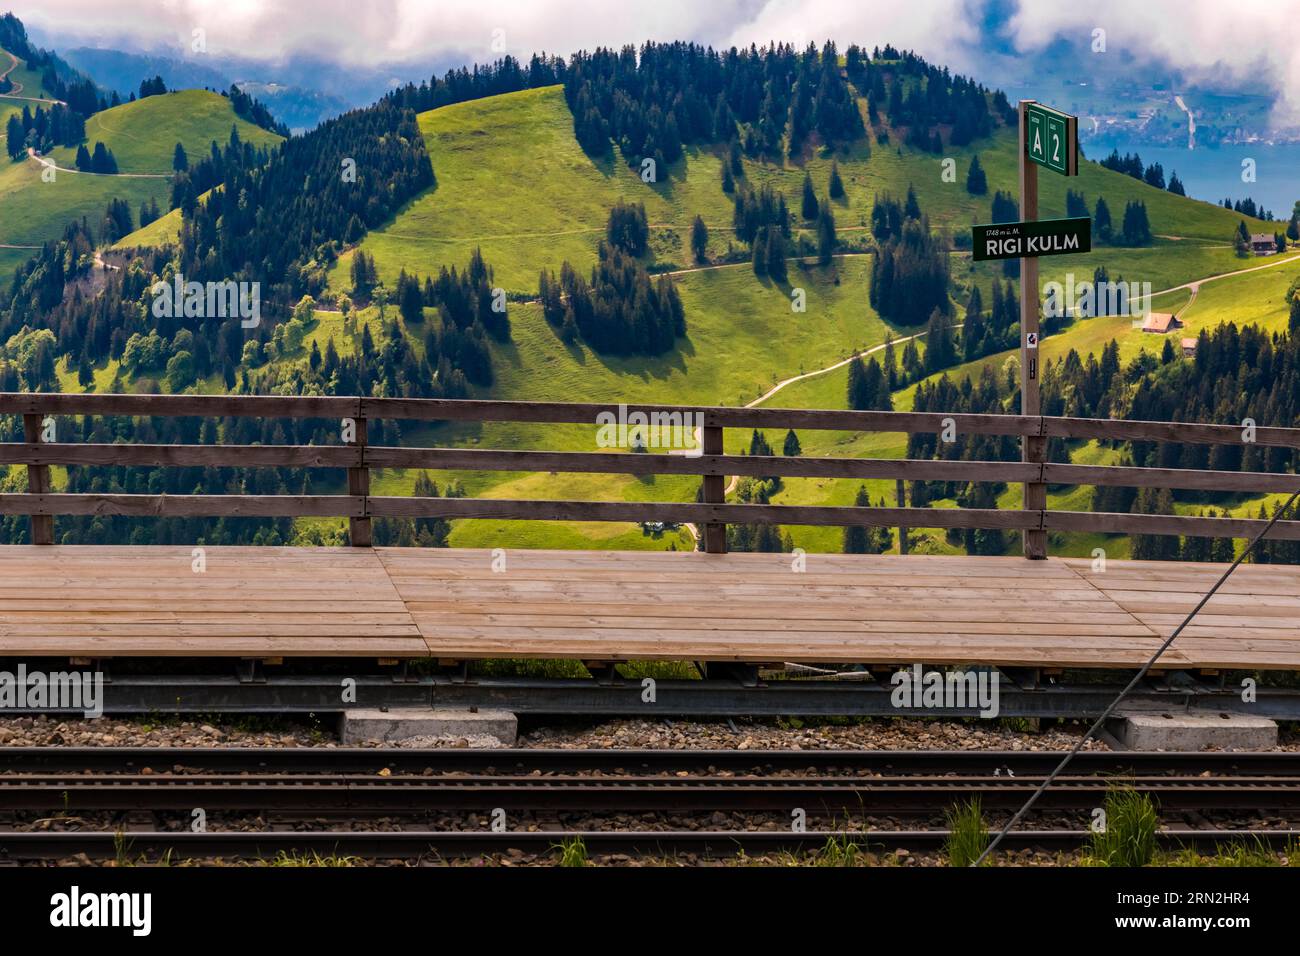 Bella vista della stazione di montagna della ferrovia a cremagliera di Rigi Kulm con un incantevole paesaggio montano sul retro. La piattaforma di legno ha un segno che... Foto Stock